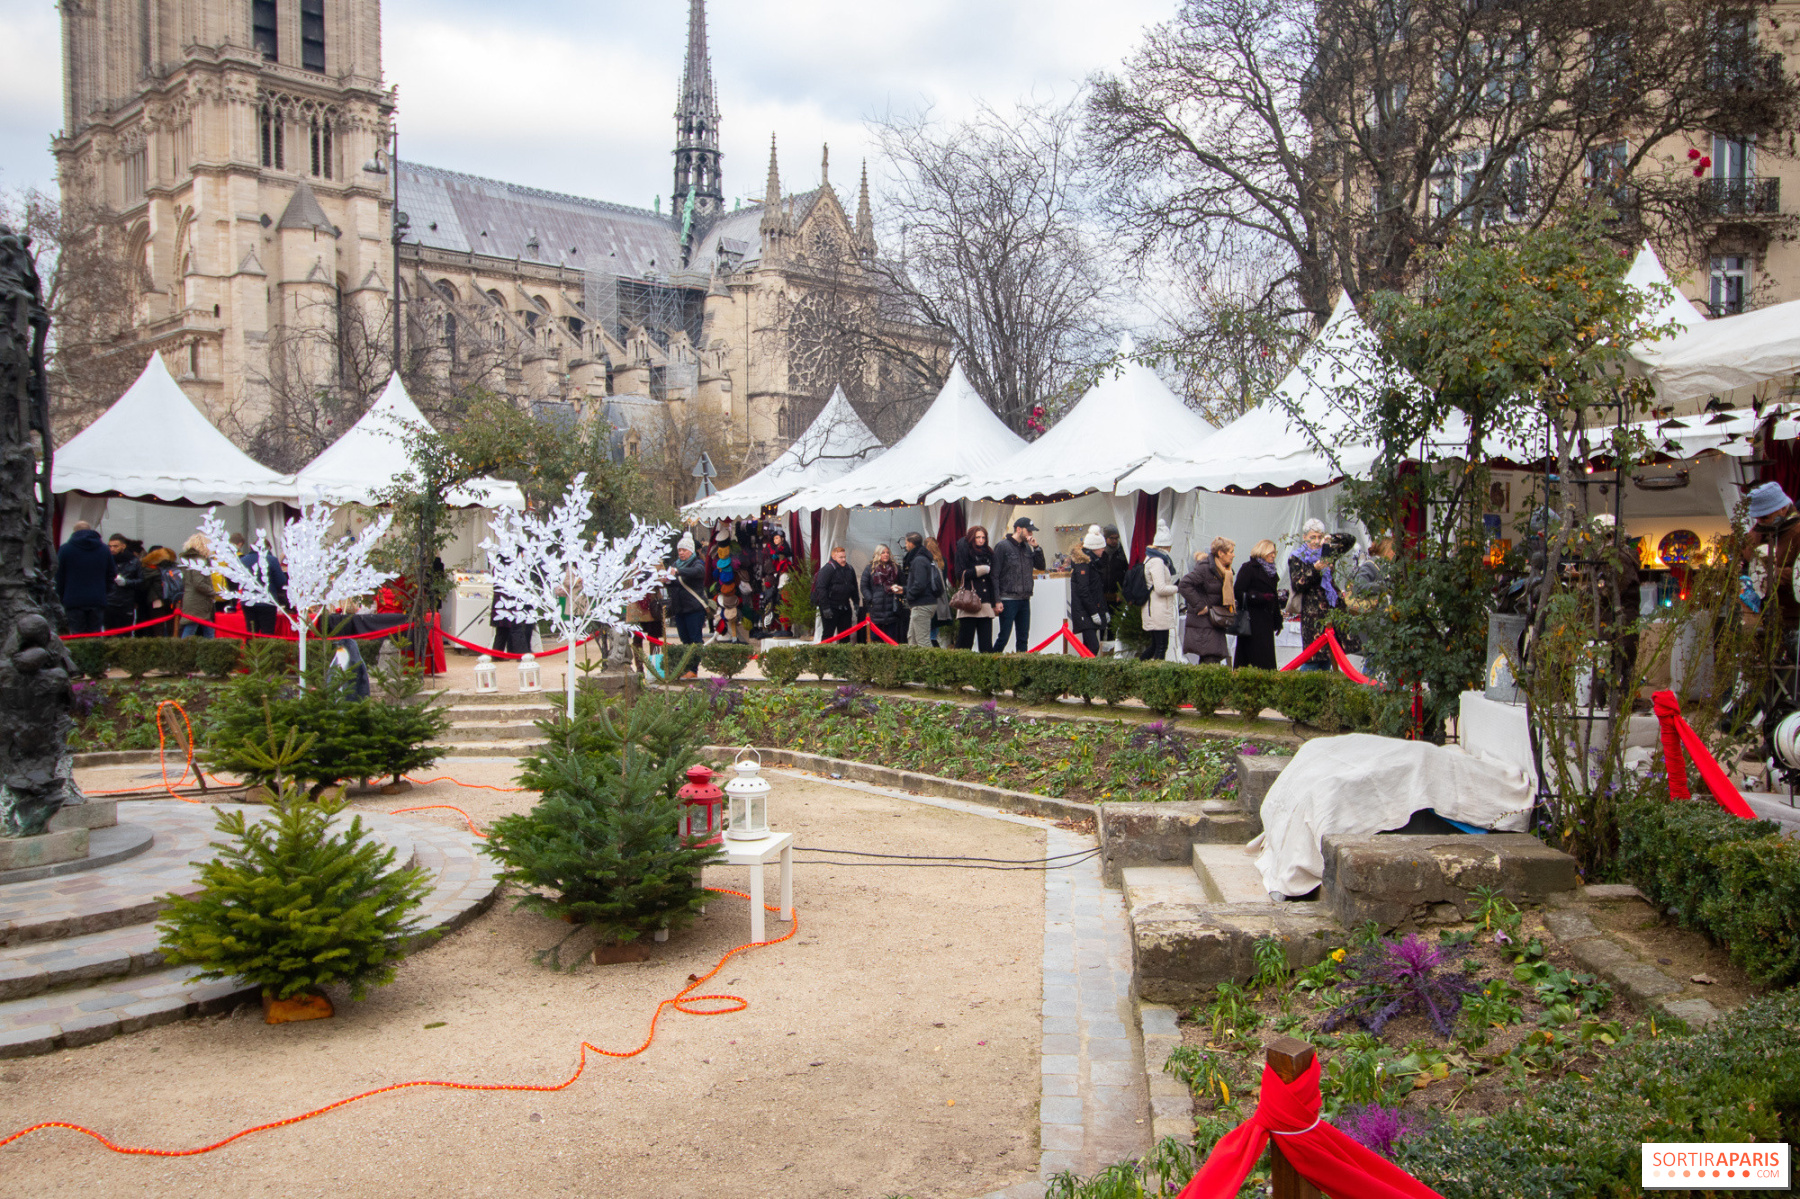 パリのノートルダム寺院のクリスマス市が2023年に復活 - Sortiraparis.com